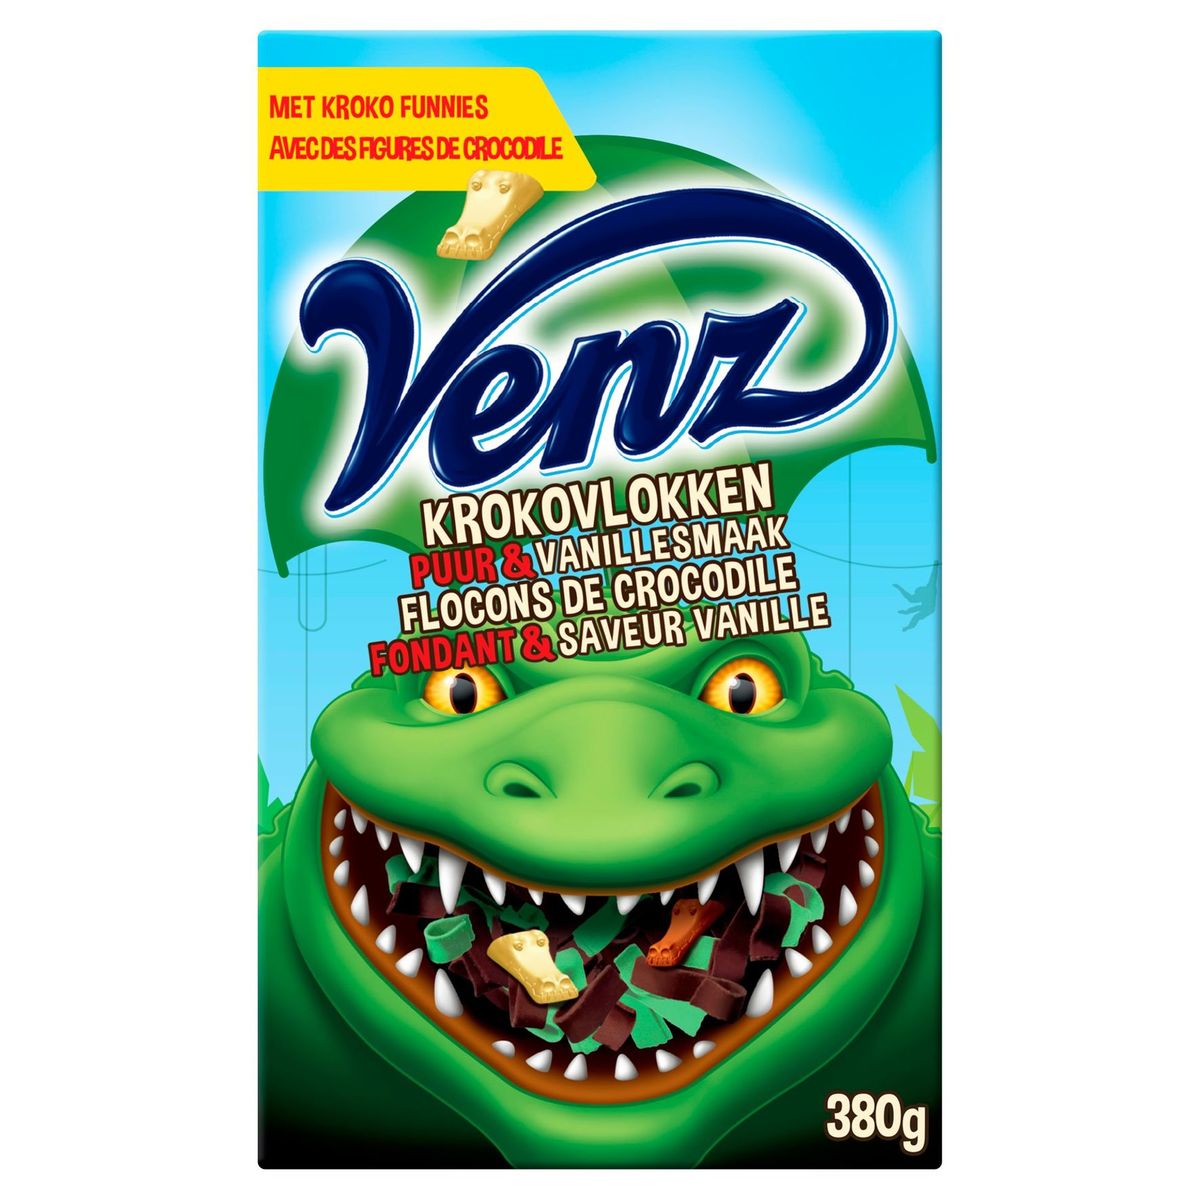 Venz Flocons de Crocodile Fondant & Saveur Vanille 200 g